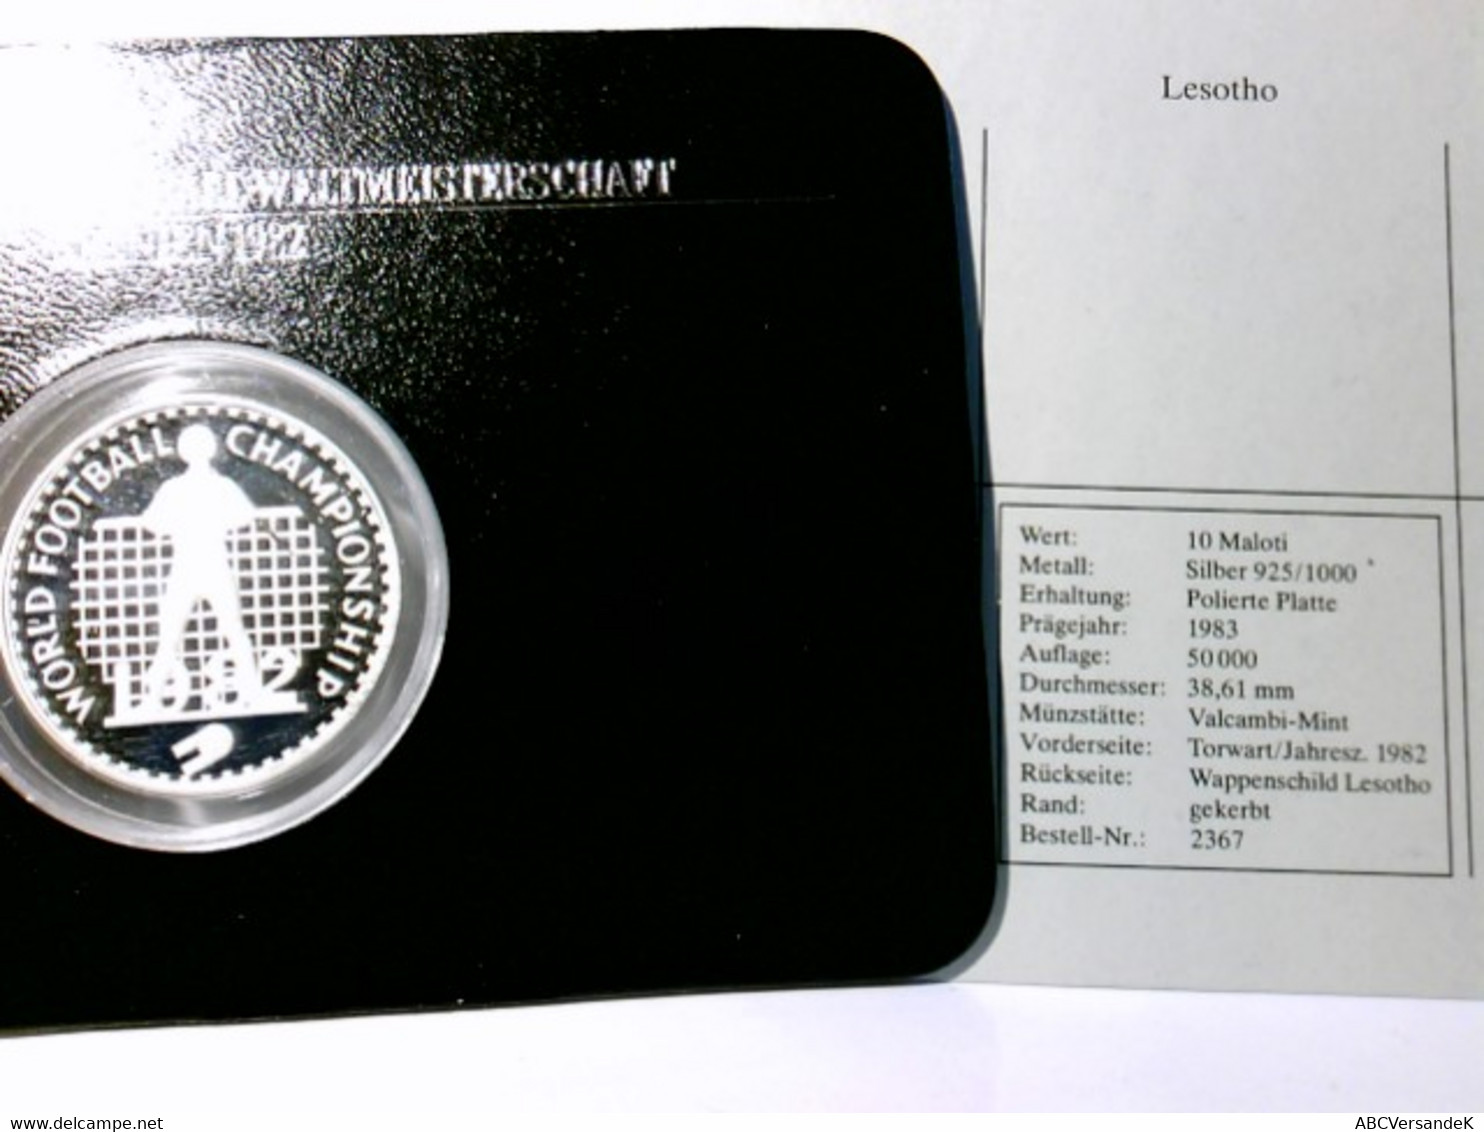 Münzen/ Medaillen, 10 Maloti, 1983, Lesotho, Fussball Weltmeisterschaft Spanien 1982, Polierte Platte. - Numismatik